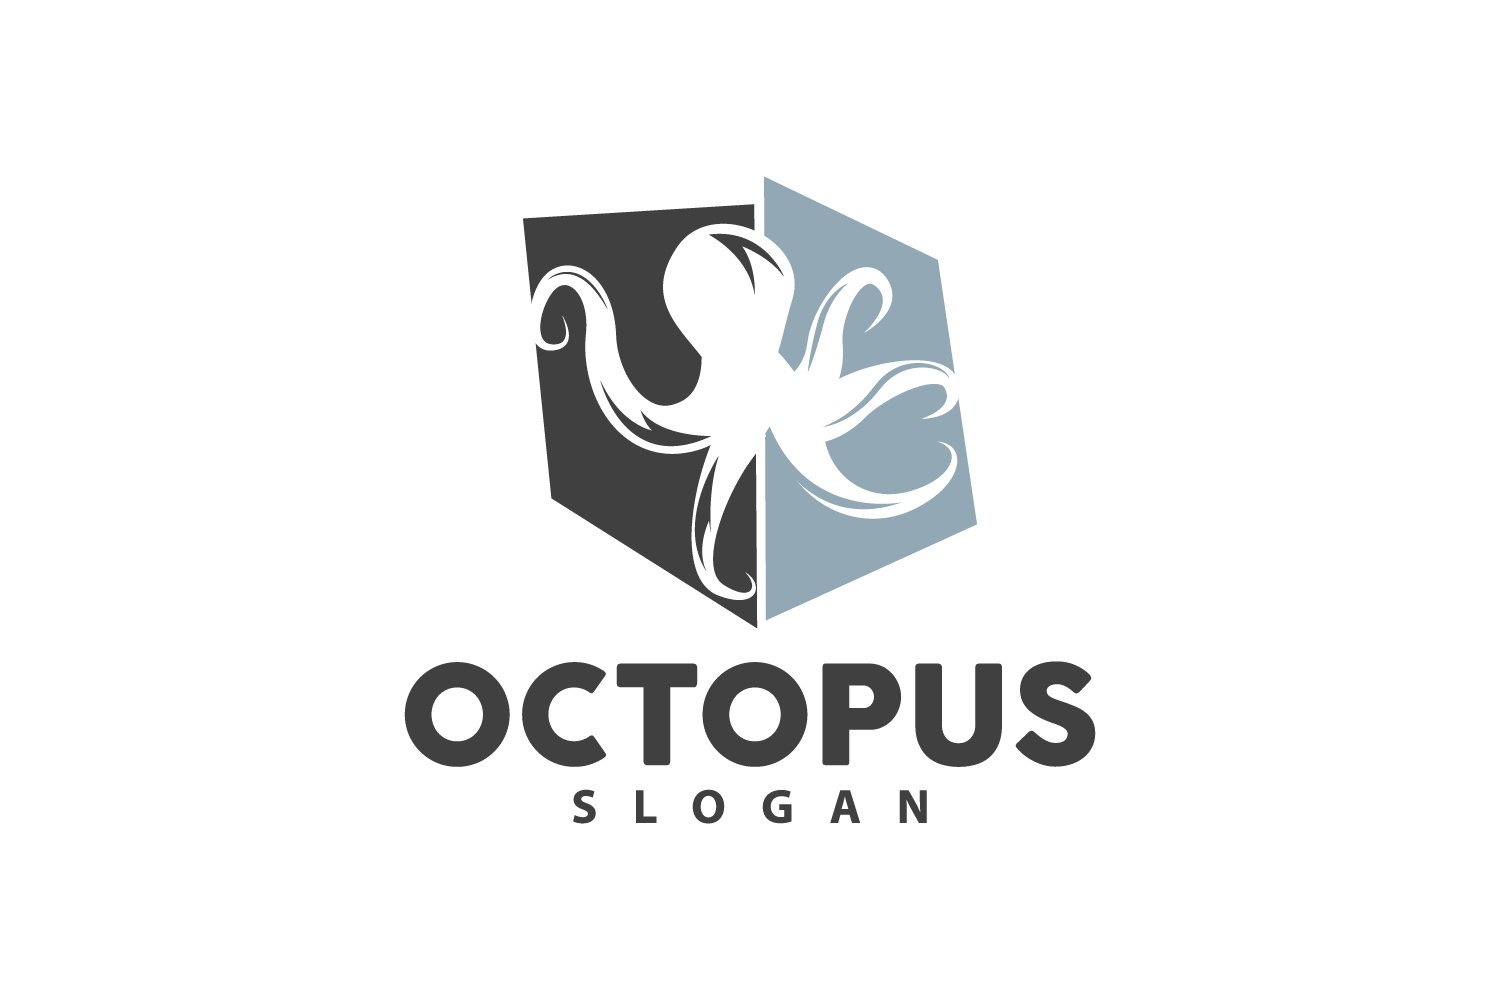 Octopus Logo Old Retro Vintage DesignV17